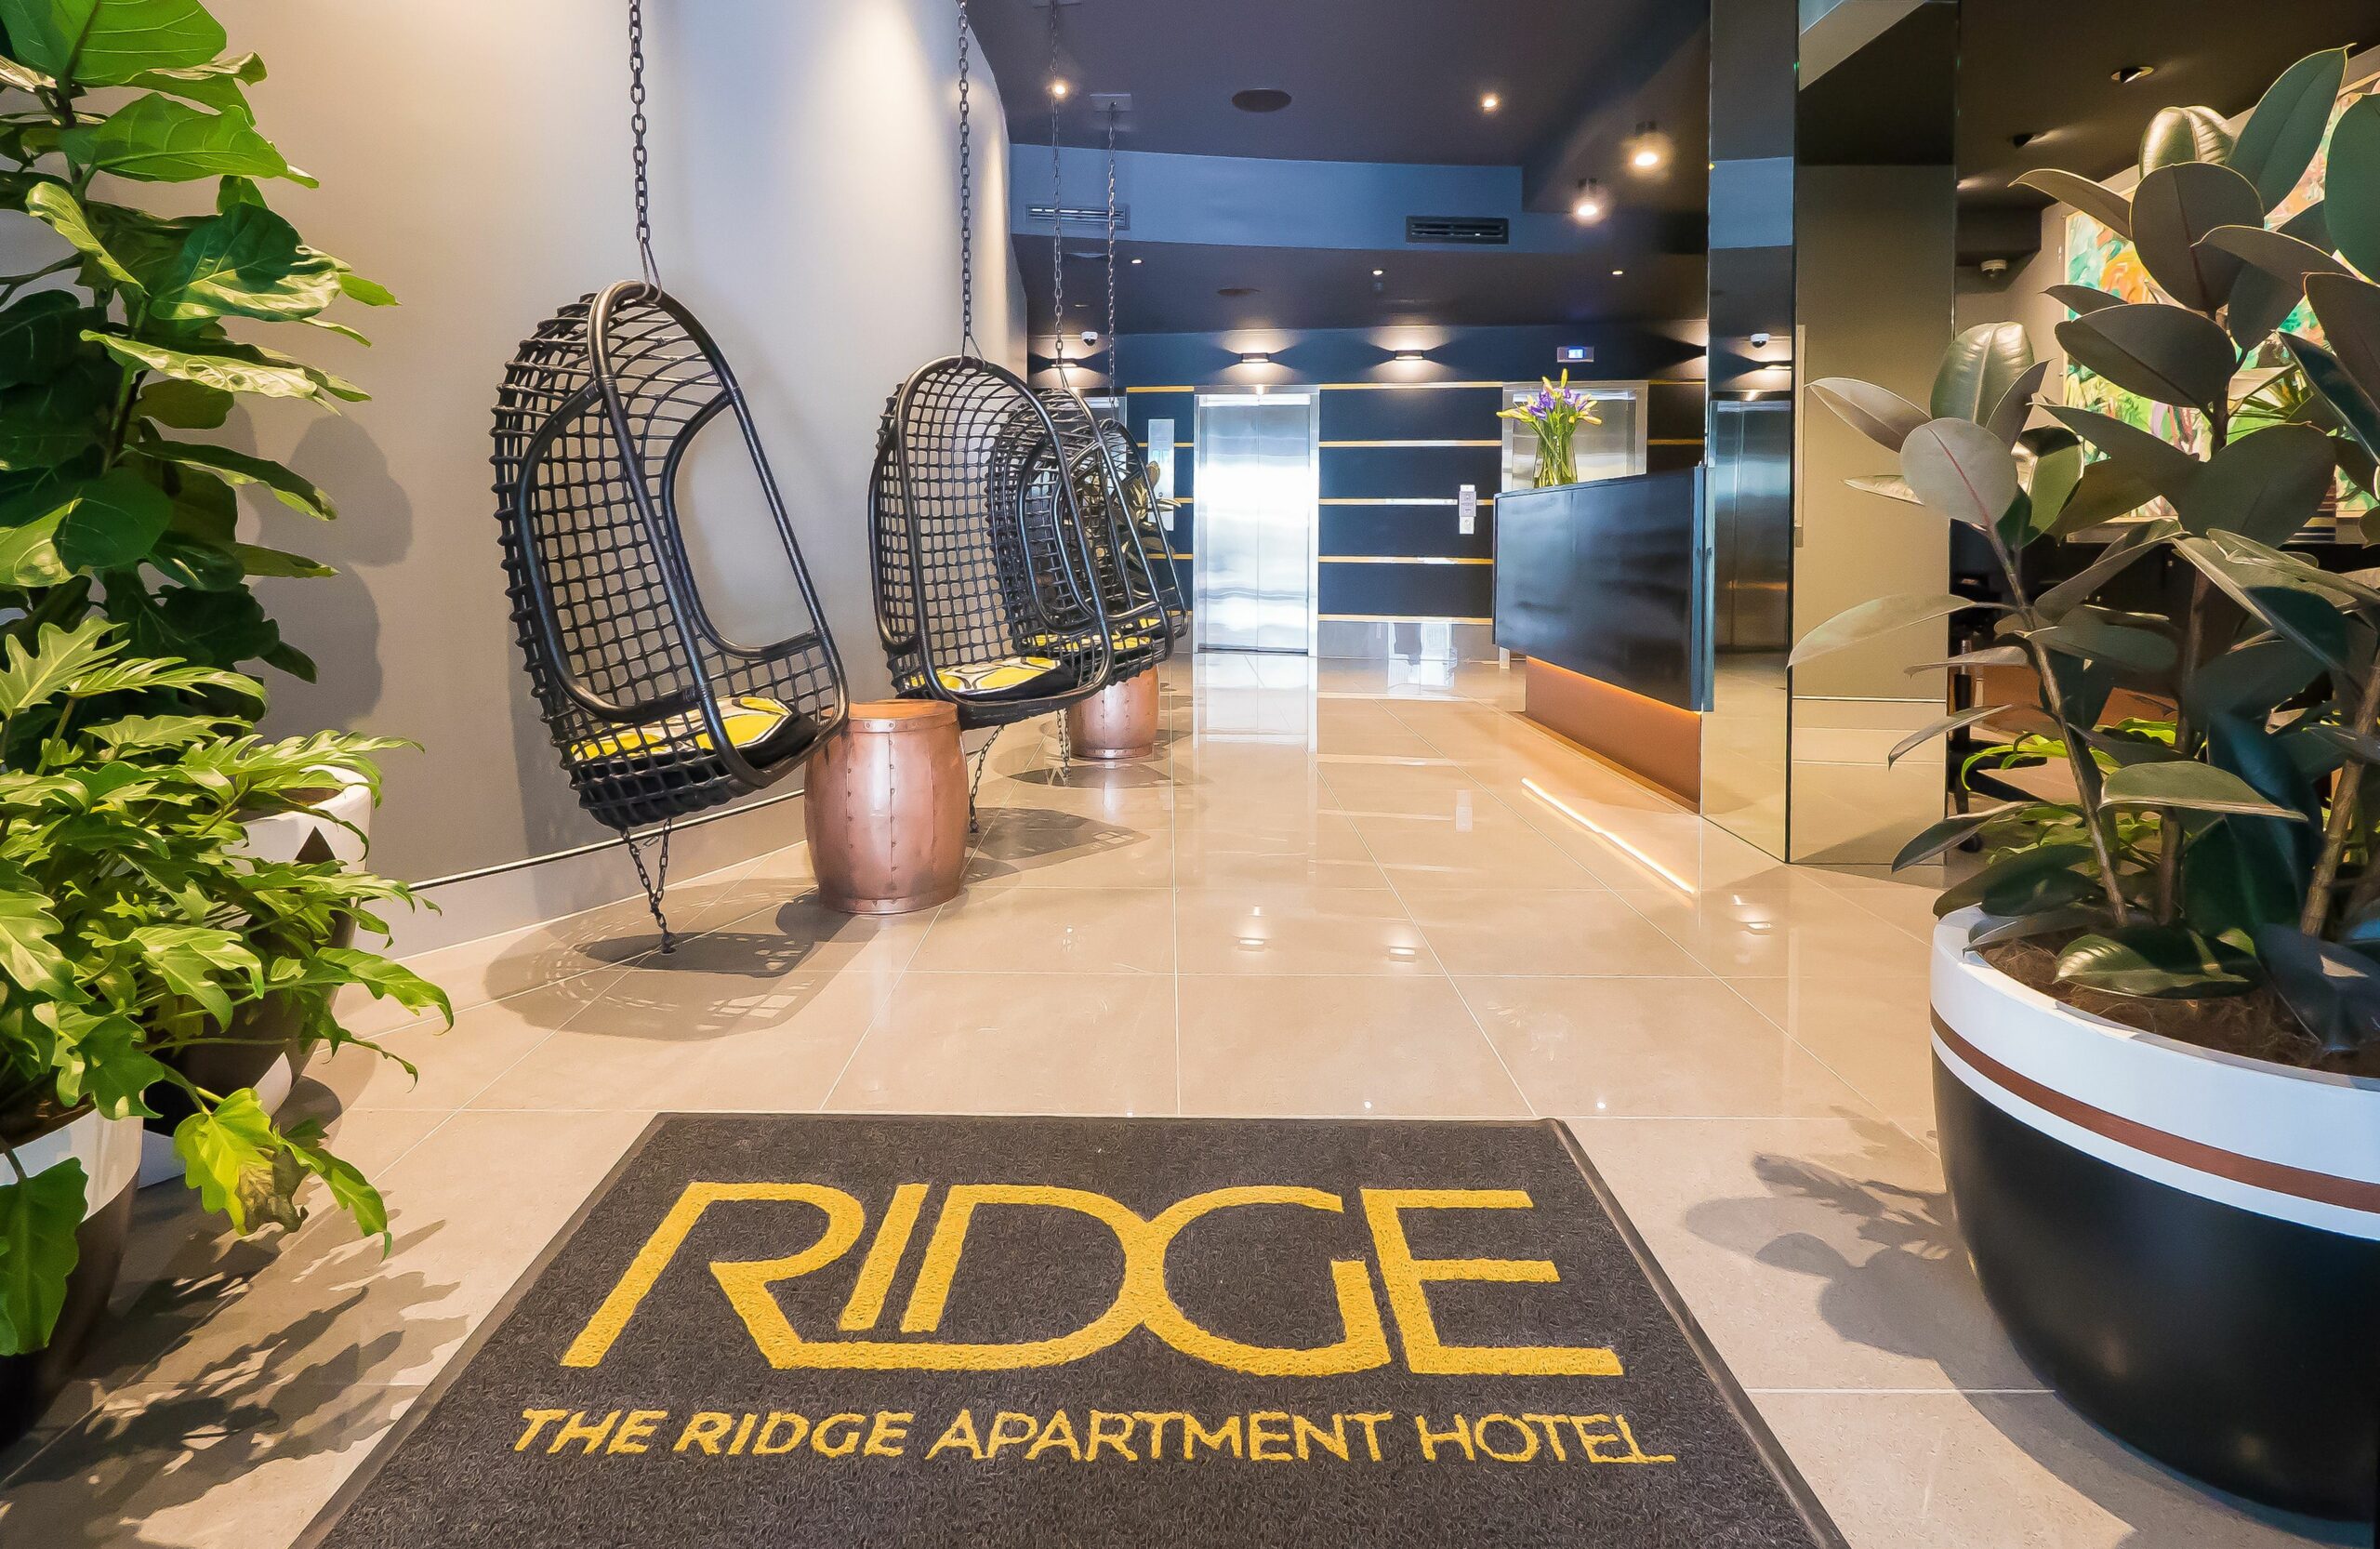 The Ridge Apartment Hotel